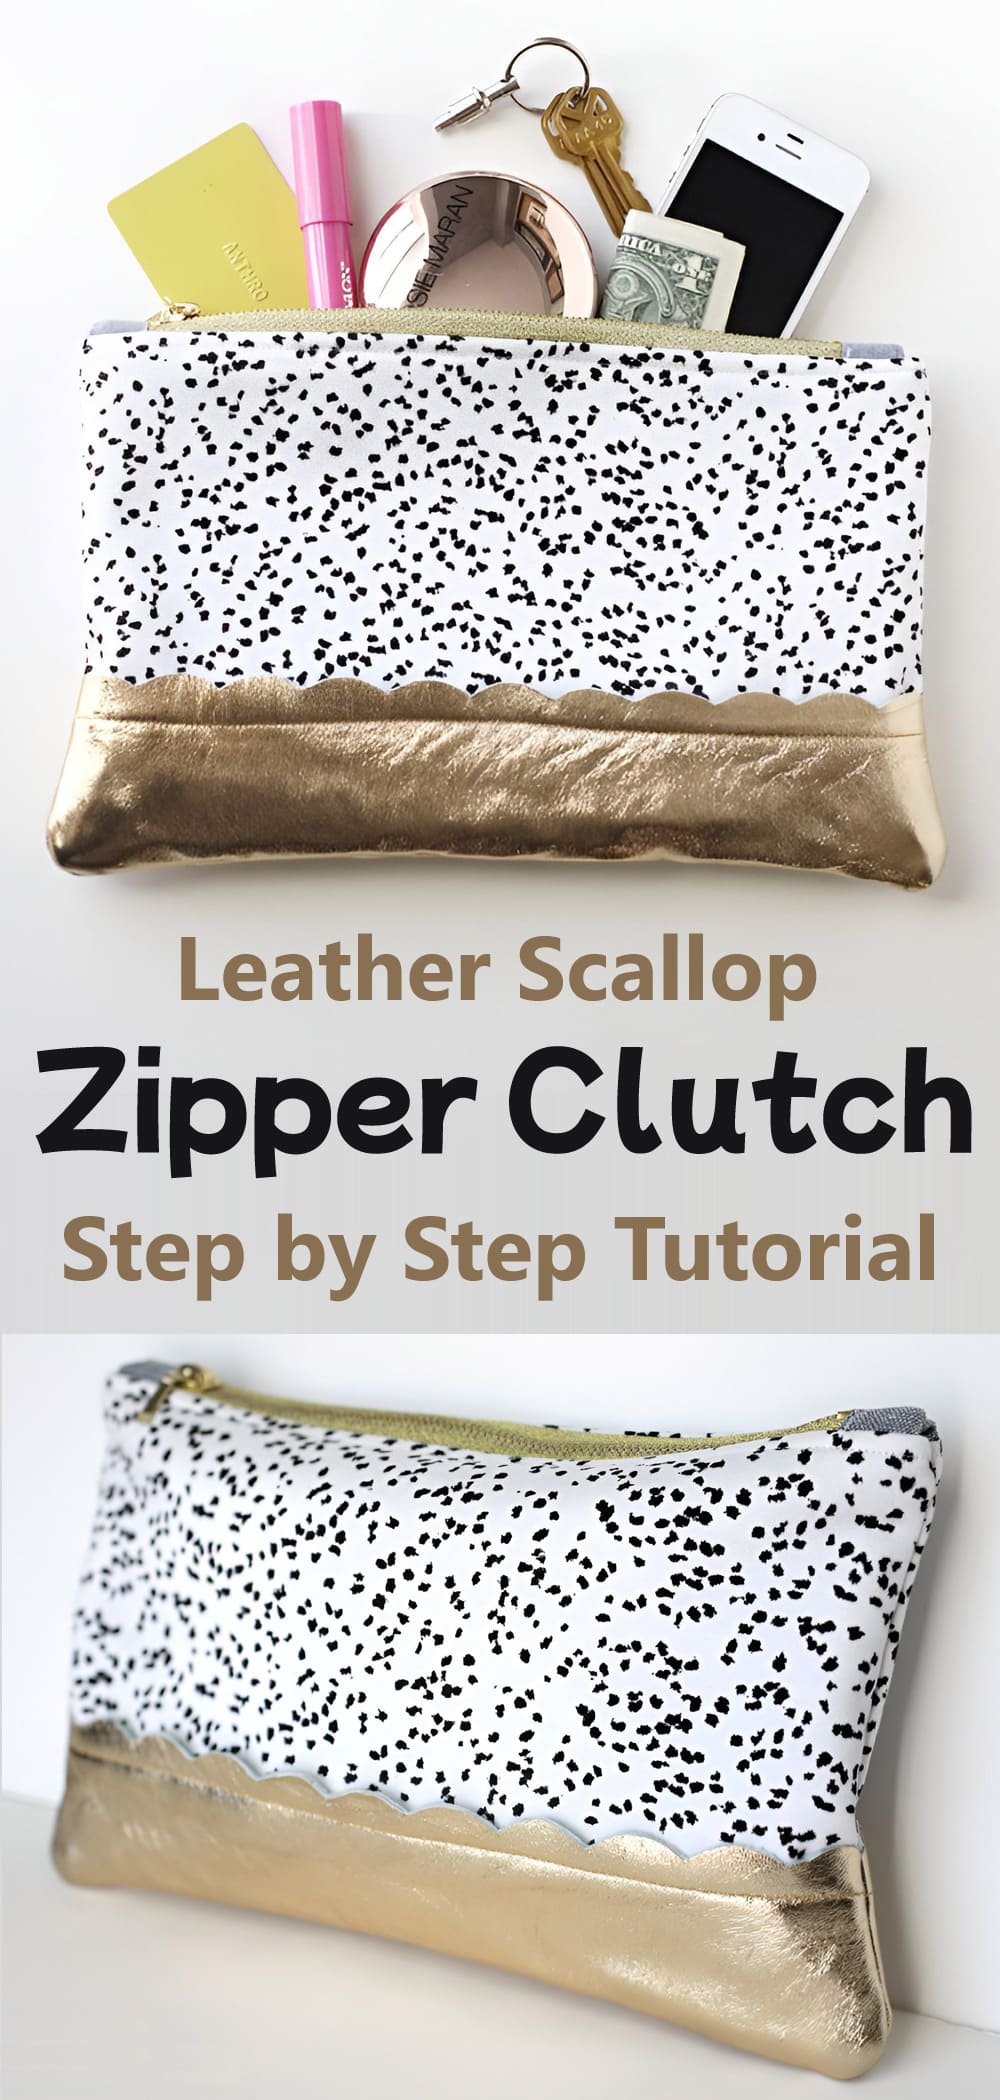 Leather Scallop Zipper Clutch Tutorial